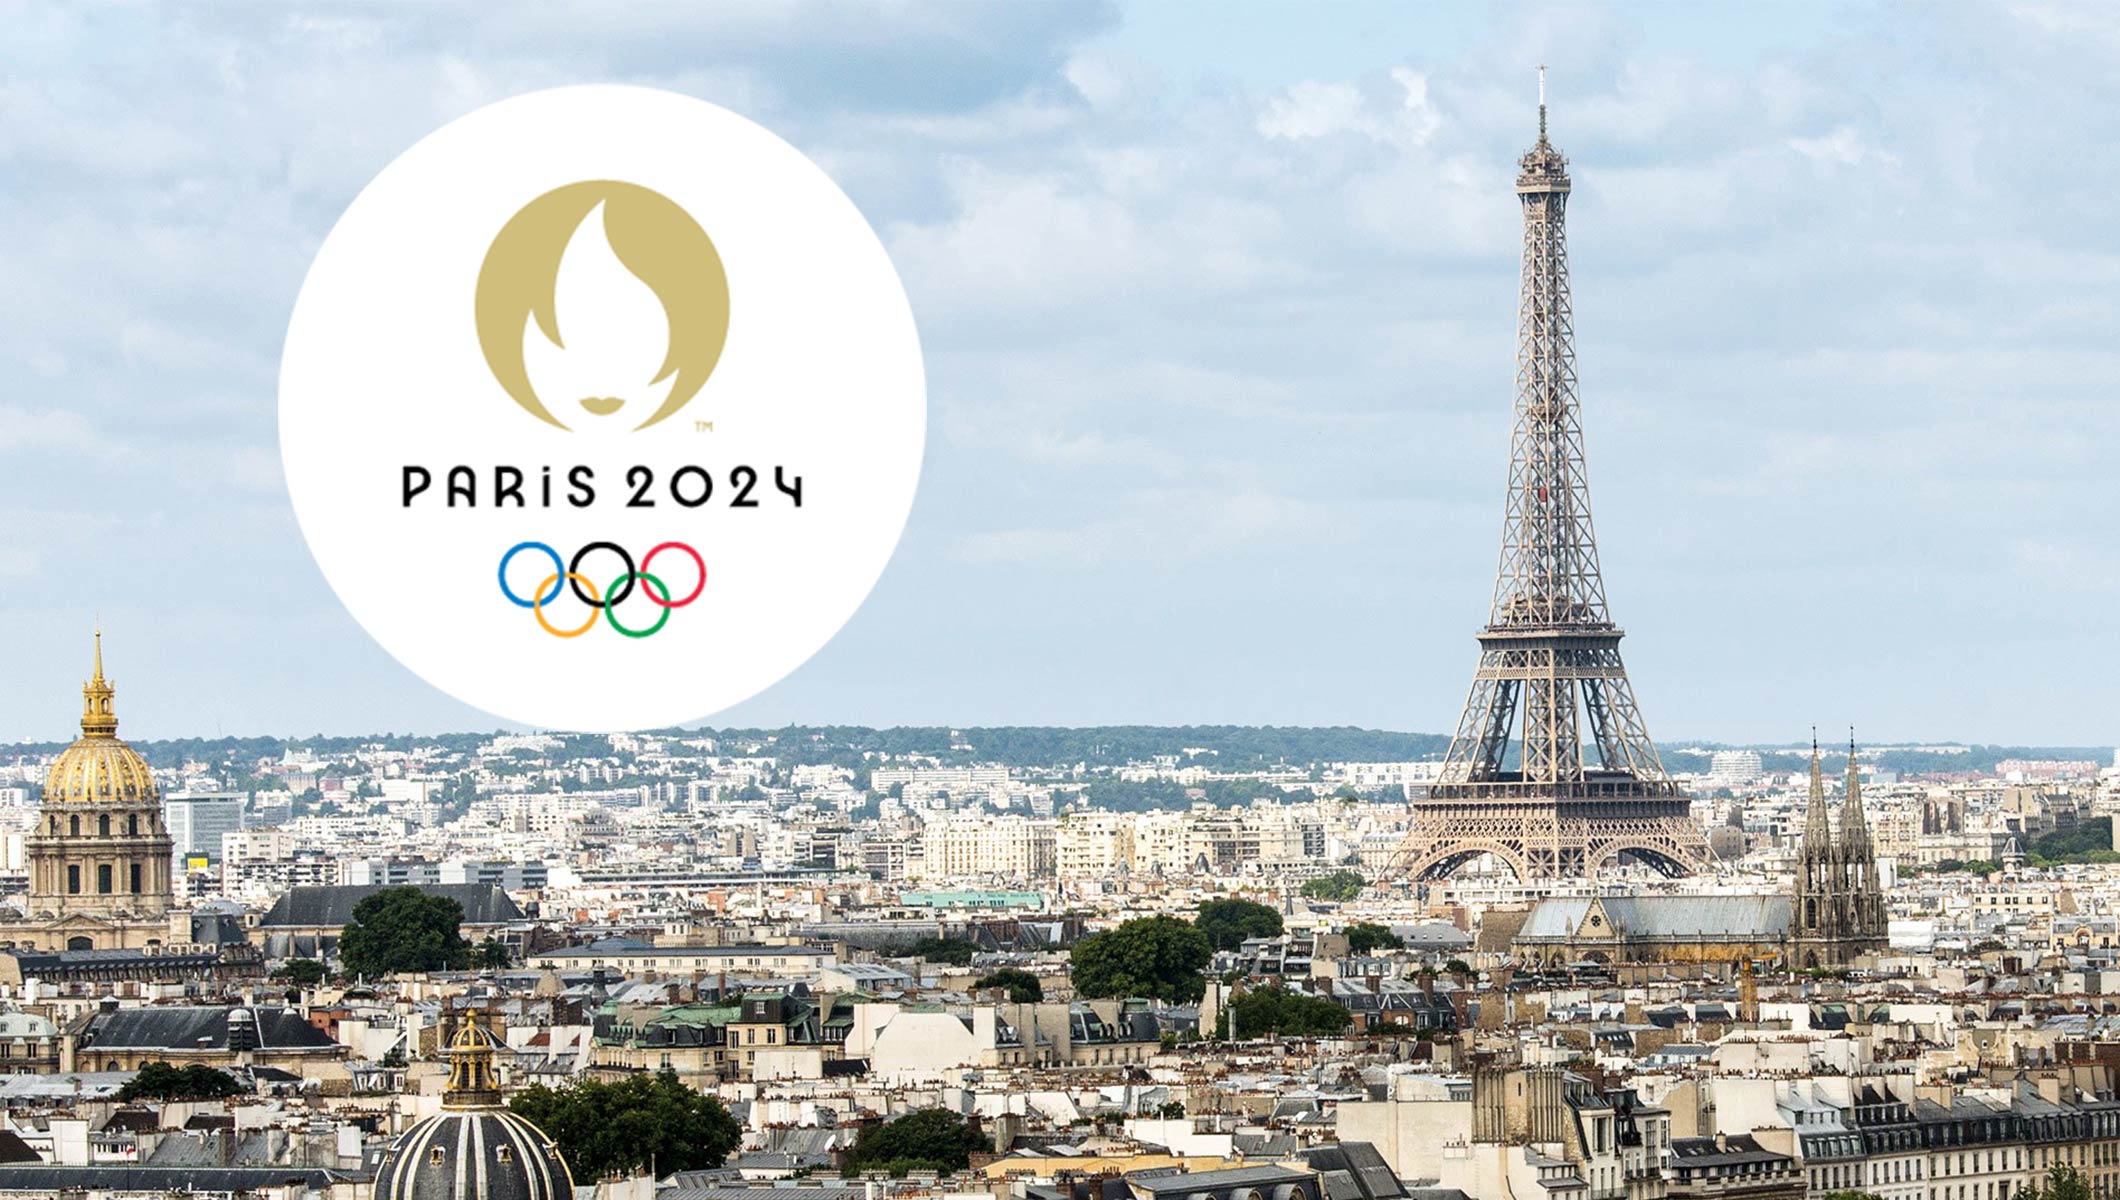 Break dancing becomes Olympic sport to debut at Paris Games 2024